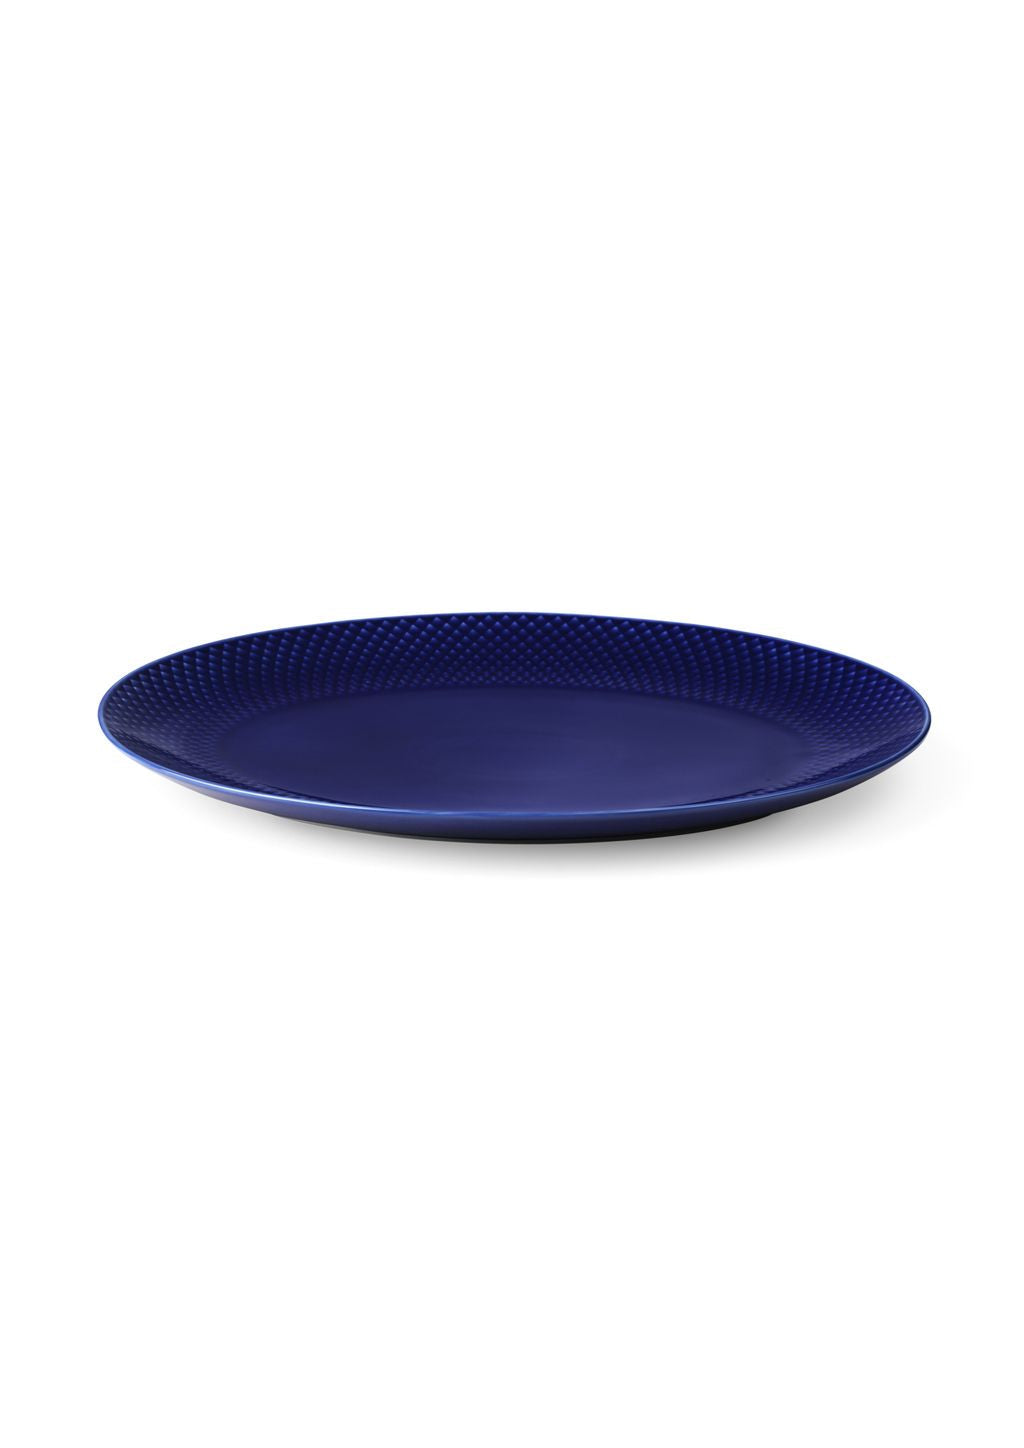 Lyngby Porcelæn Rhombe Couleur ovale Plaque de service 35x26,5, bleu foncé